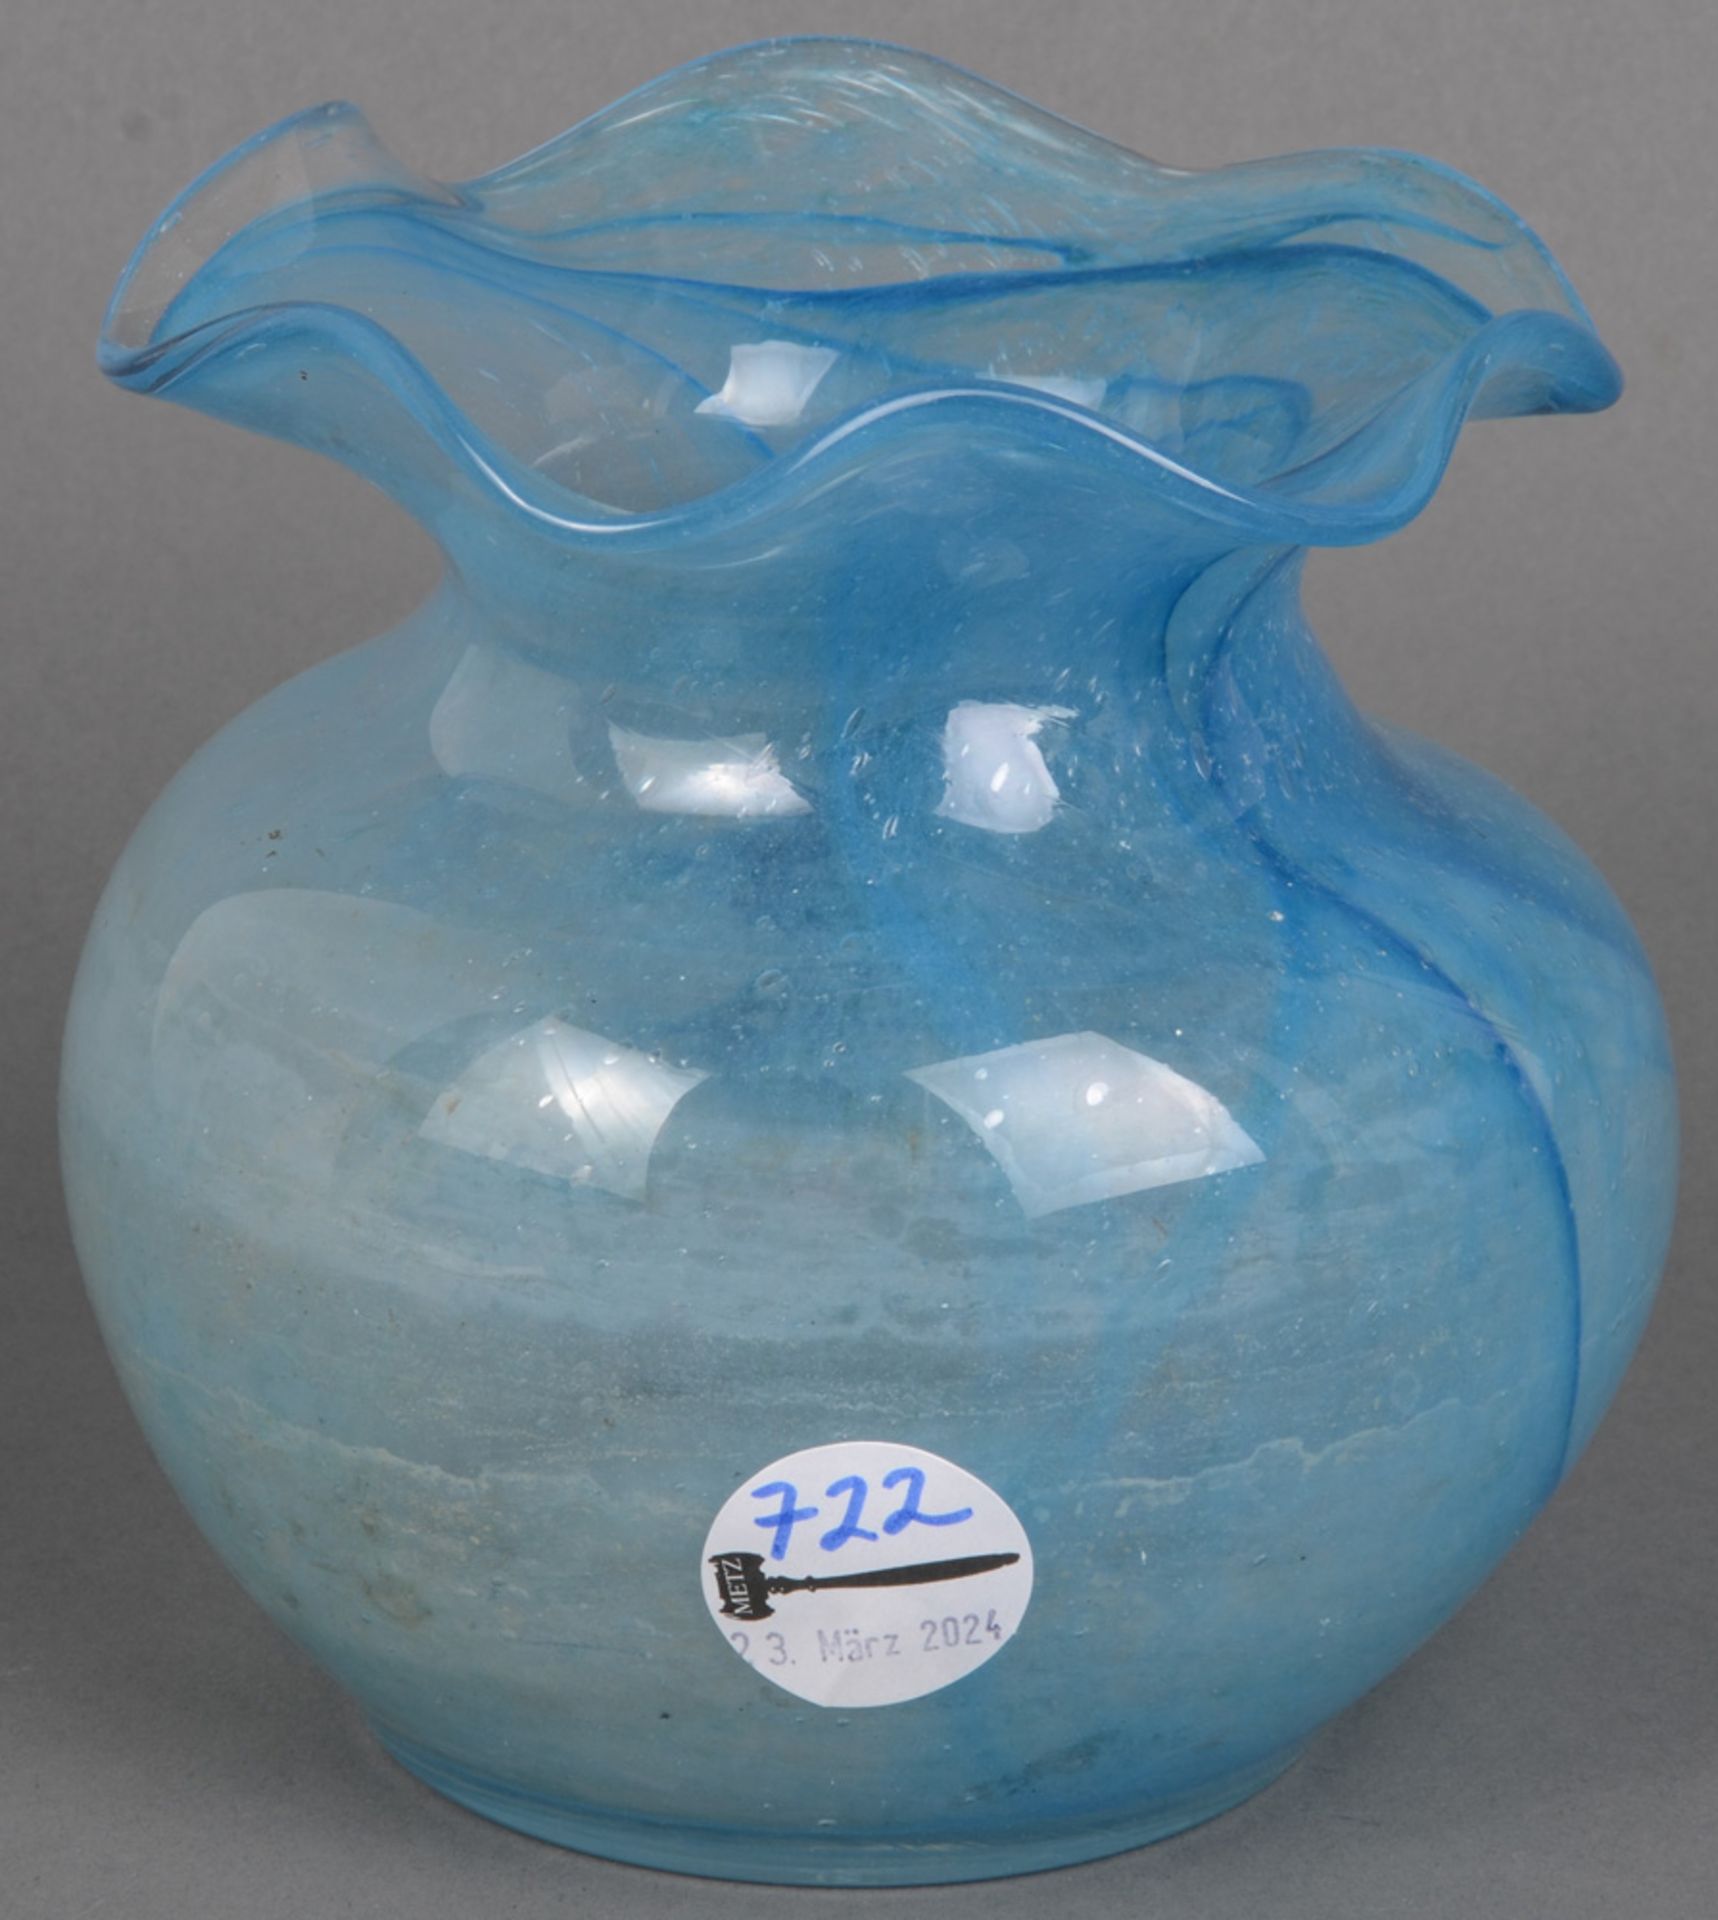 Balusterförmige Vase. Wohl deutsch dat. 1987. Farbloses Glas, aquamarinfarbig überfangen; am Boden